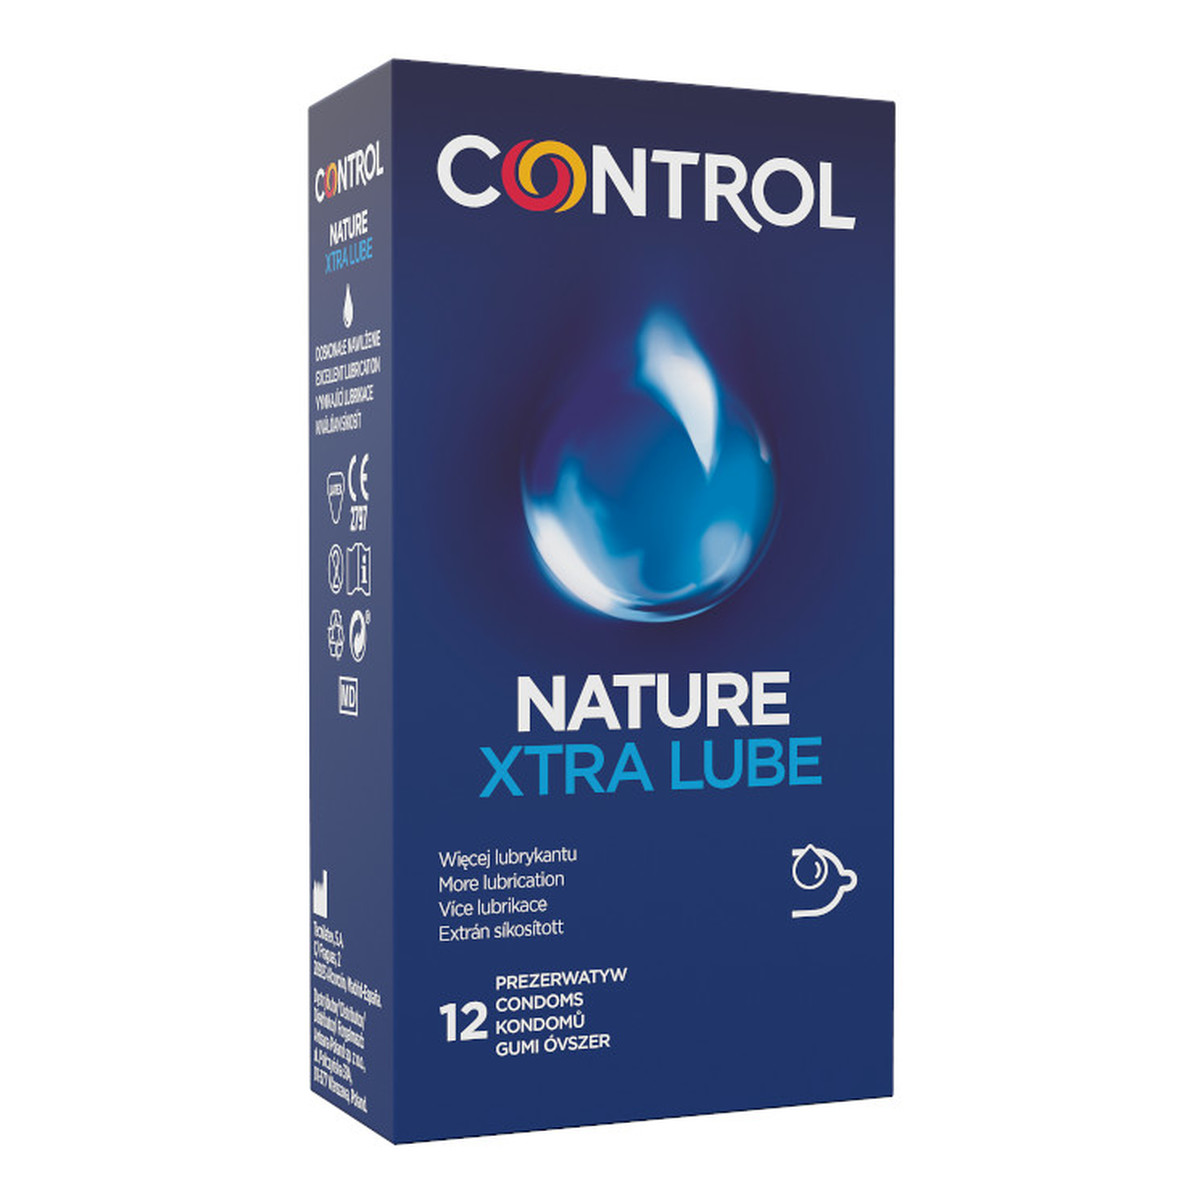 Control Nature xtra lube dodatkowo nawilżane ergonomiczne prezerwatywy z naturalnego lateksu 12szt.